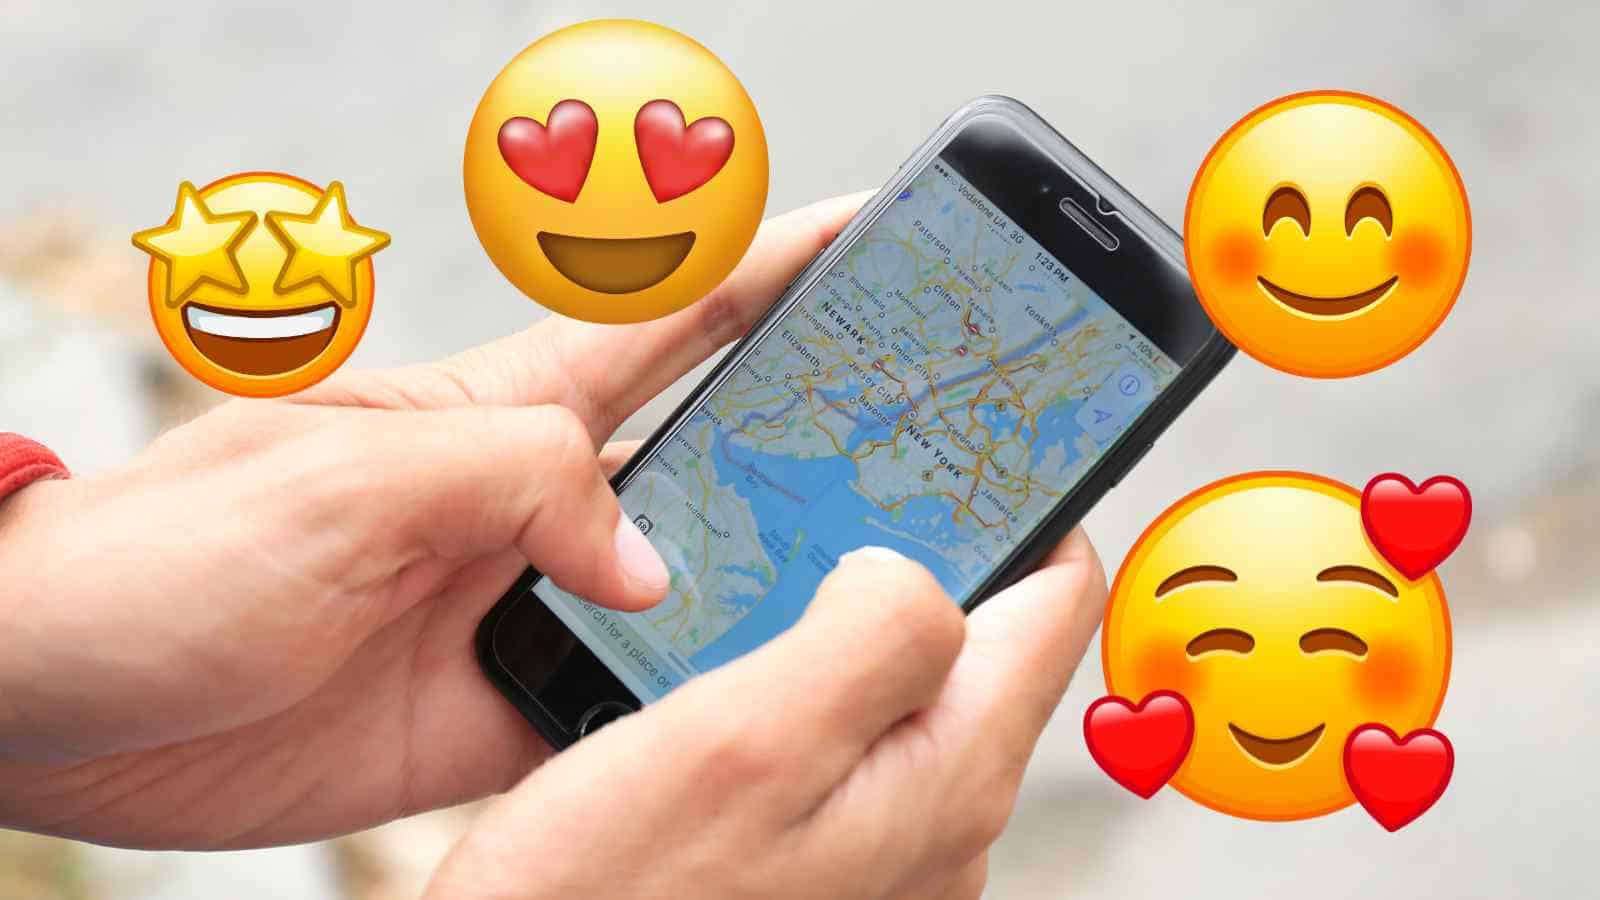 L'espansione delle emoji, quei disegni carini che usiamo in chat, sembra non avere fine: ora anche Google Maps darà la possibilità di usarle.